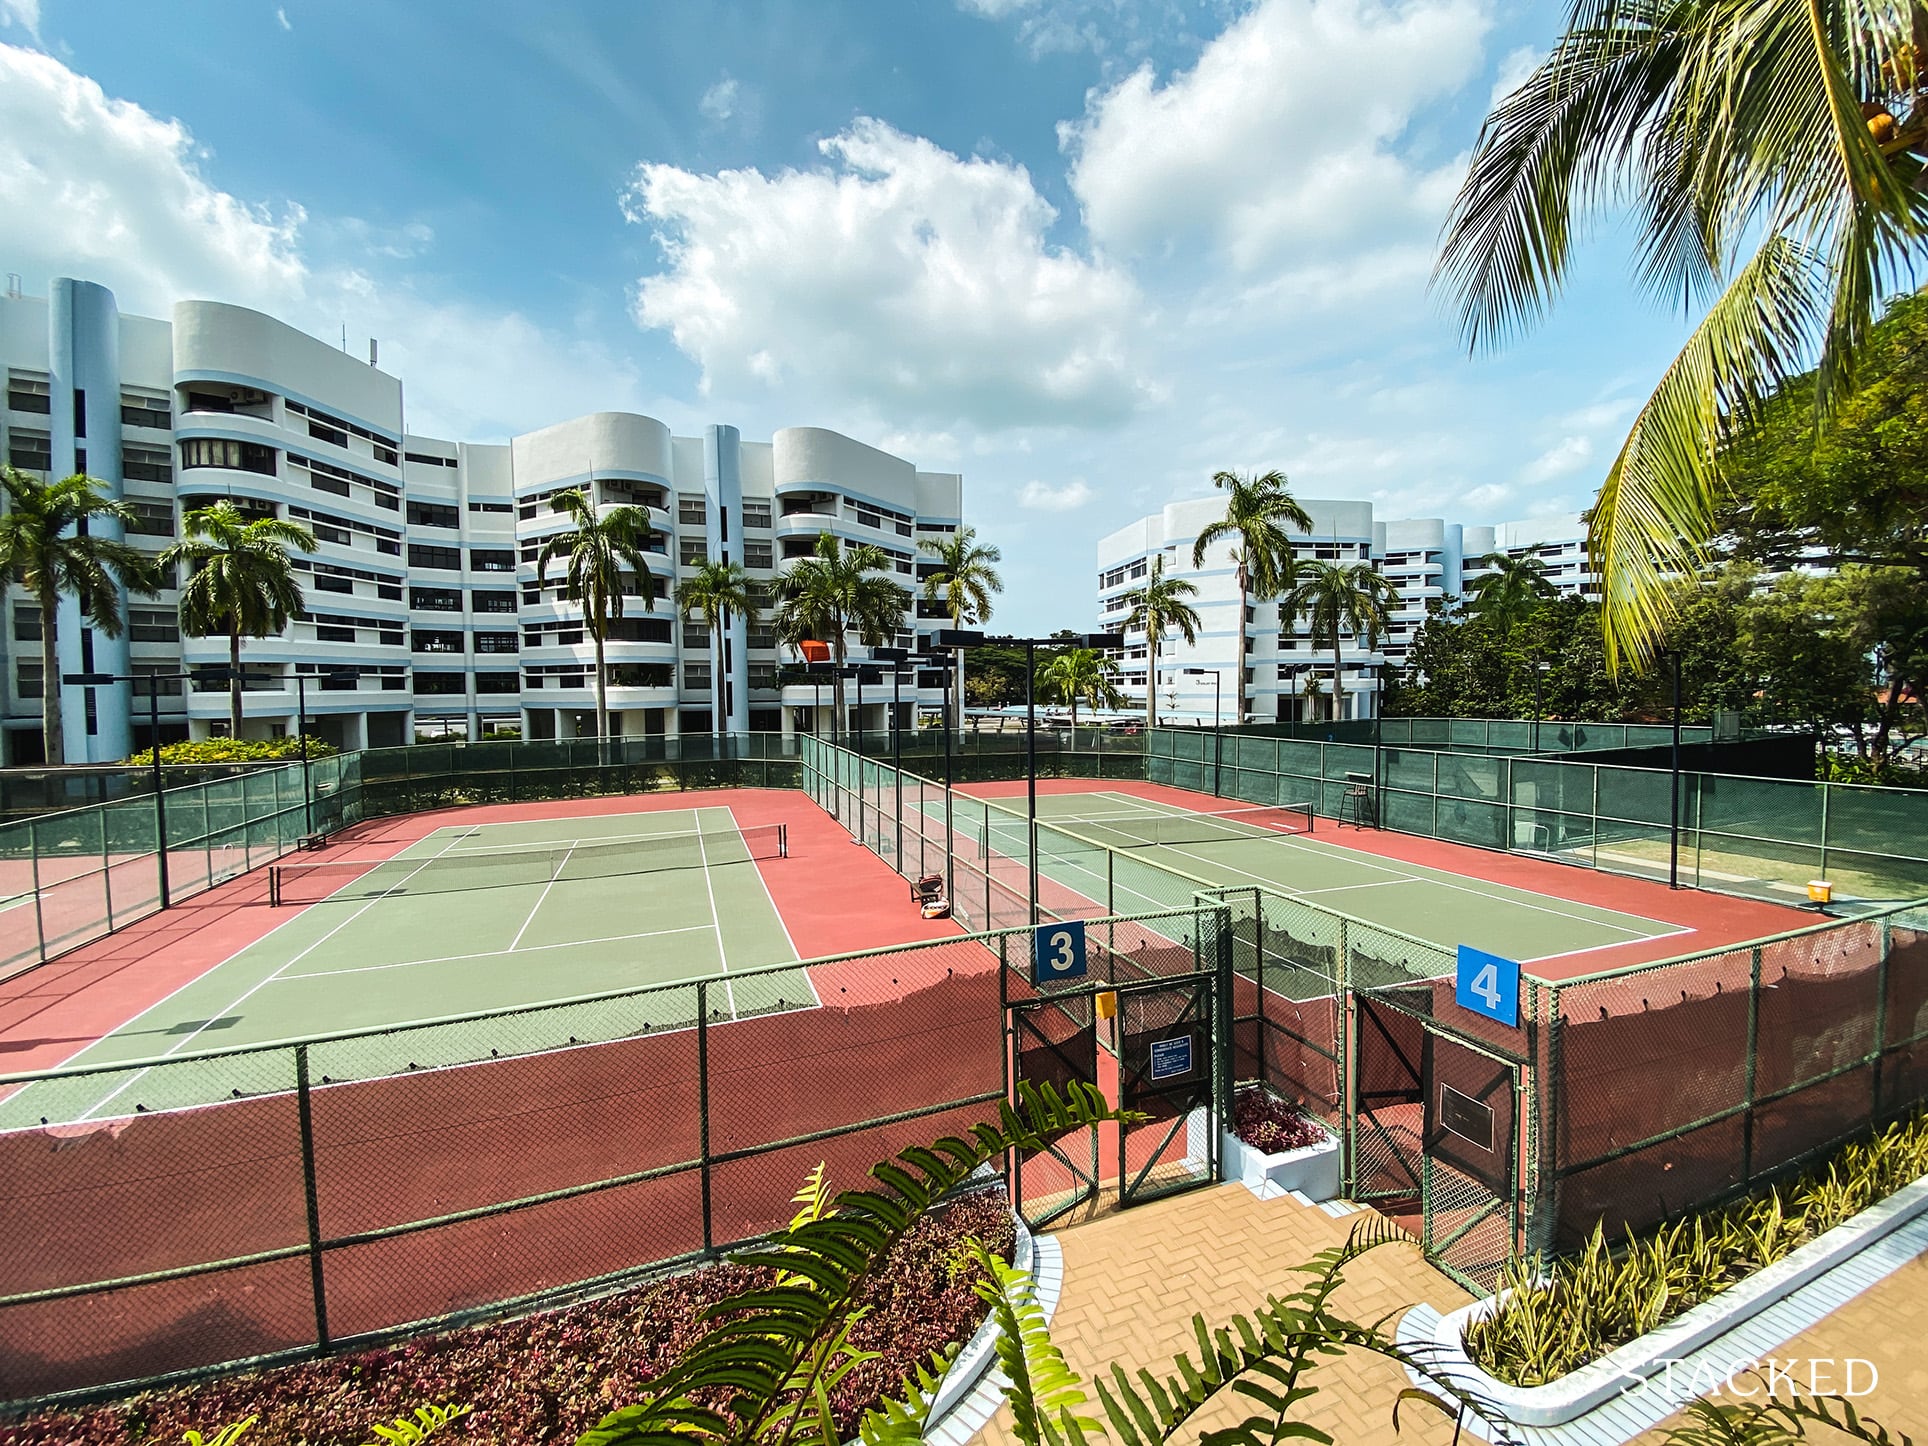 mandarin gardens tennis court